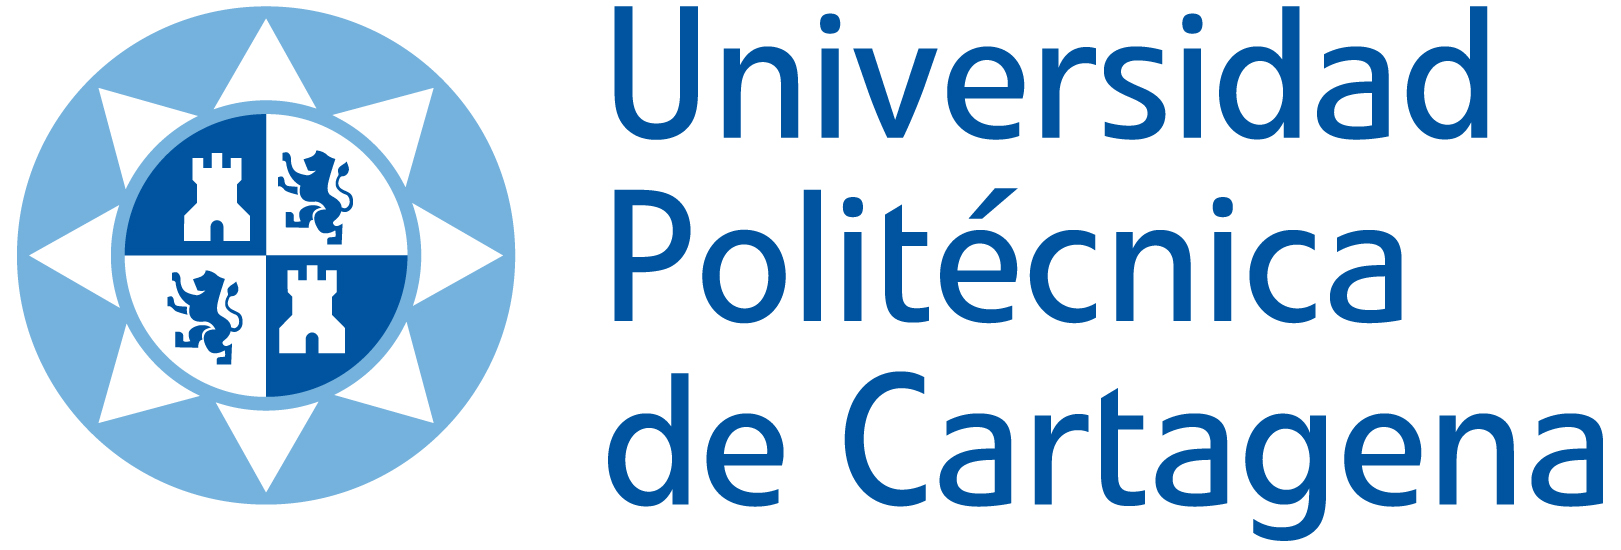 Muelles CROM firma un acuerdo con la Universidad politécnica de Cartagena